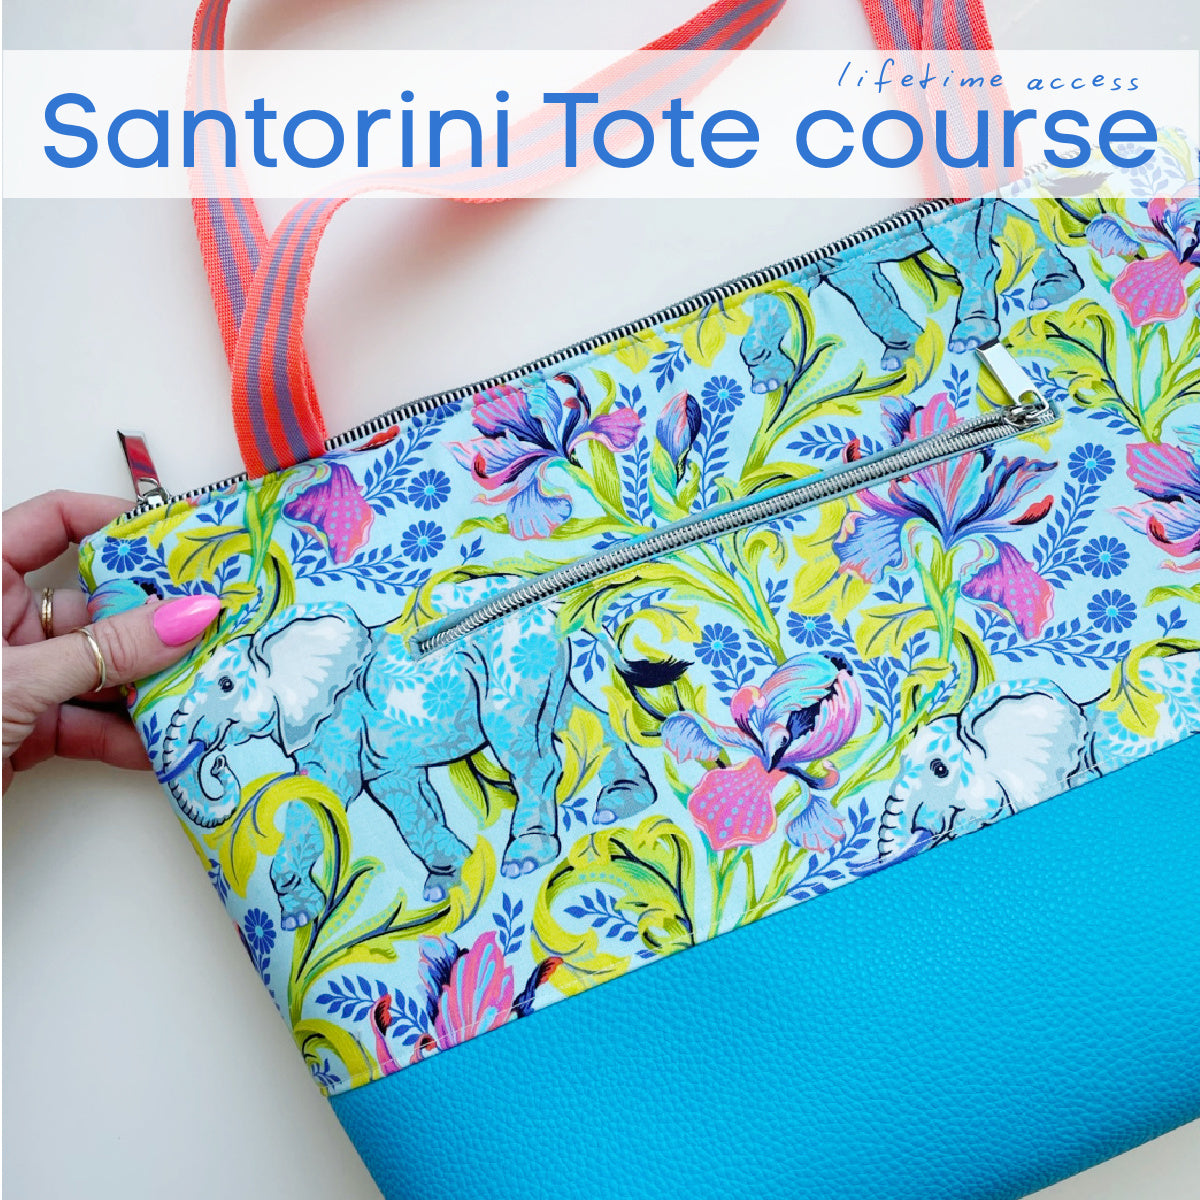 Santorini Tote Making Course